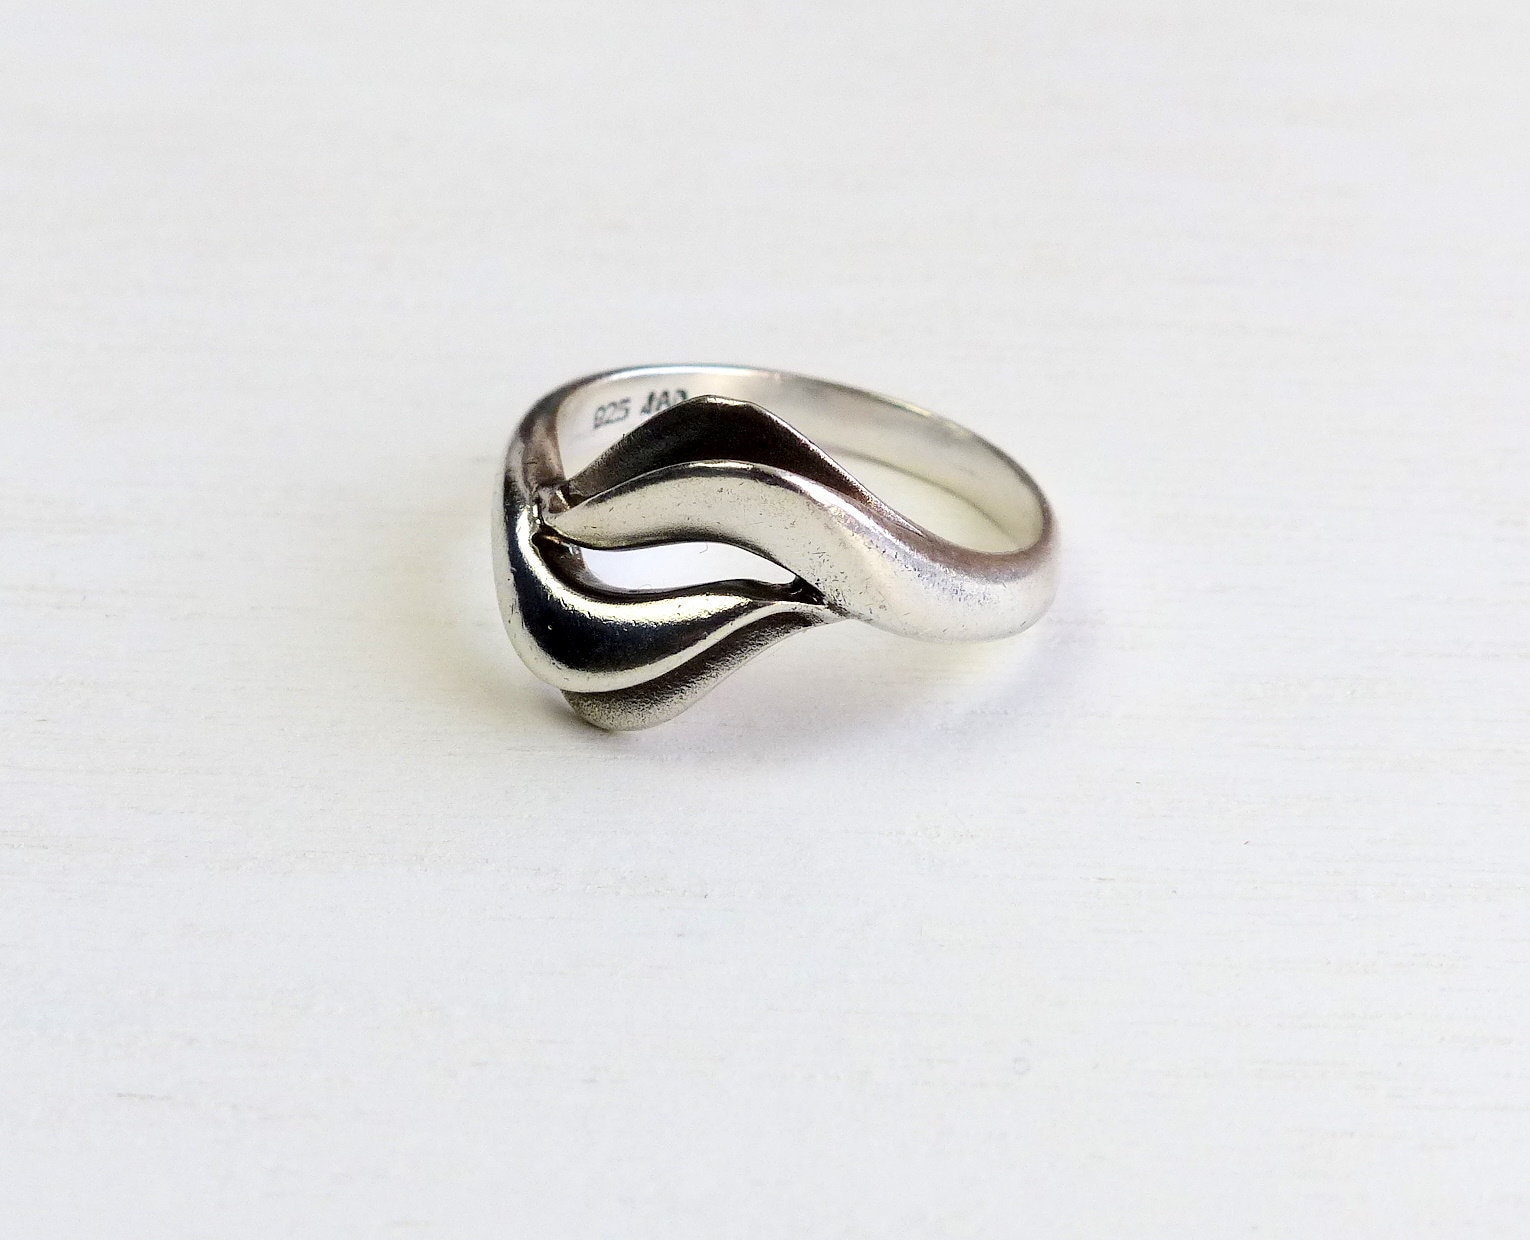 Danish Jens Aagaard JAa 925 Sterling silver Modernist ring | Etsy